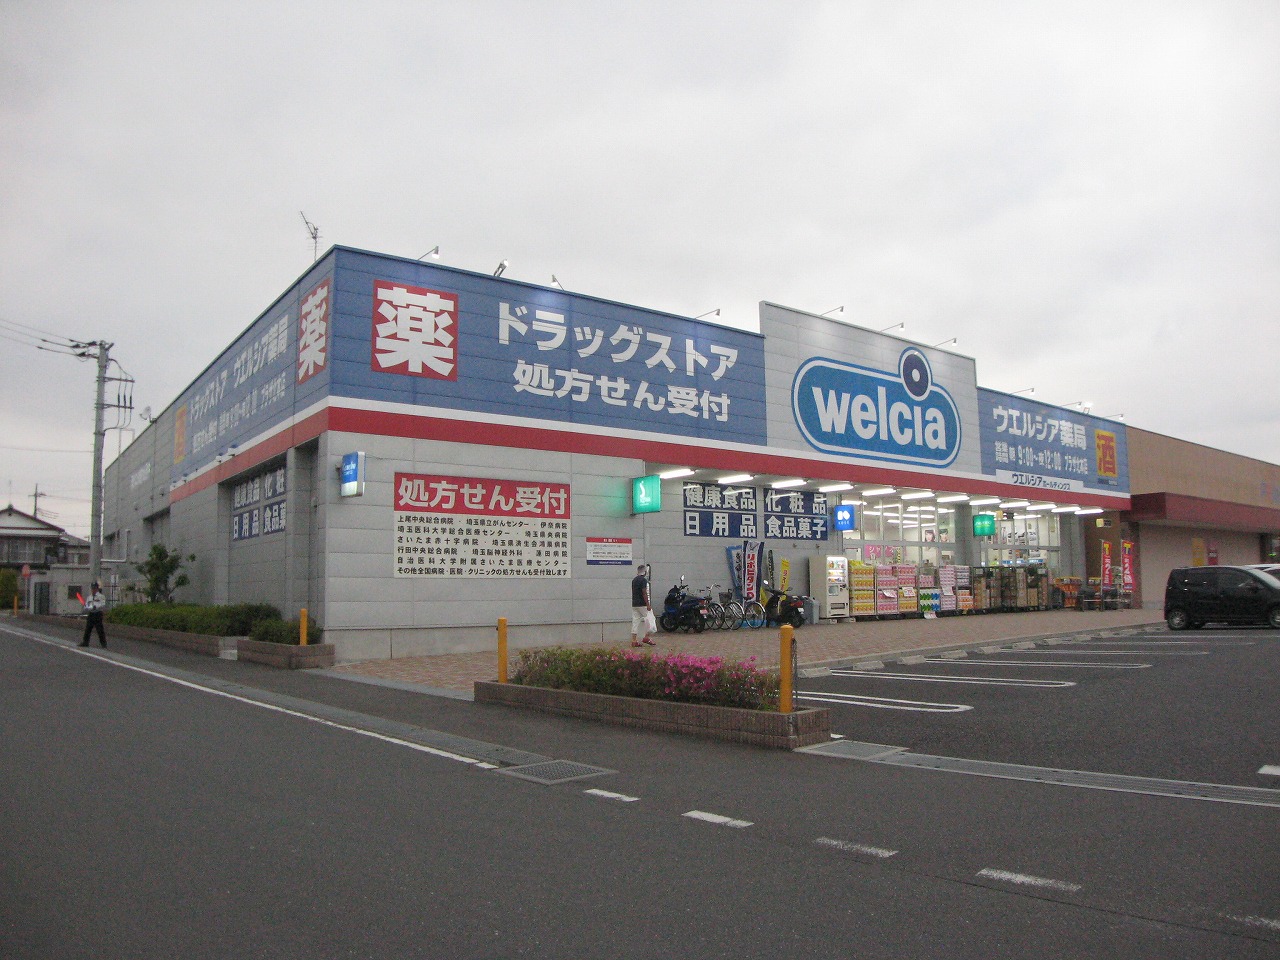 Dorakkusutoa. Uerushia Plaza Kitamoto shop 766m until (drugstore)